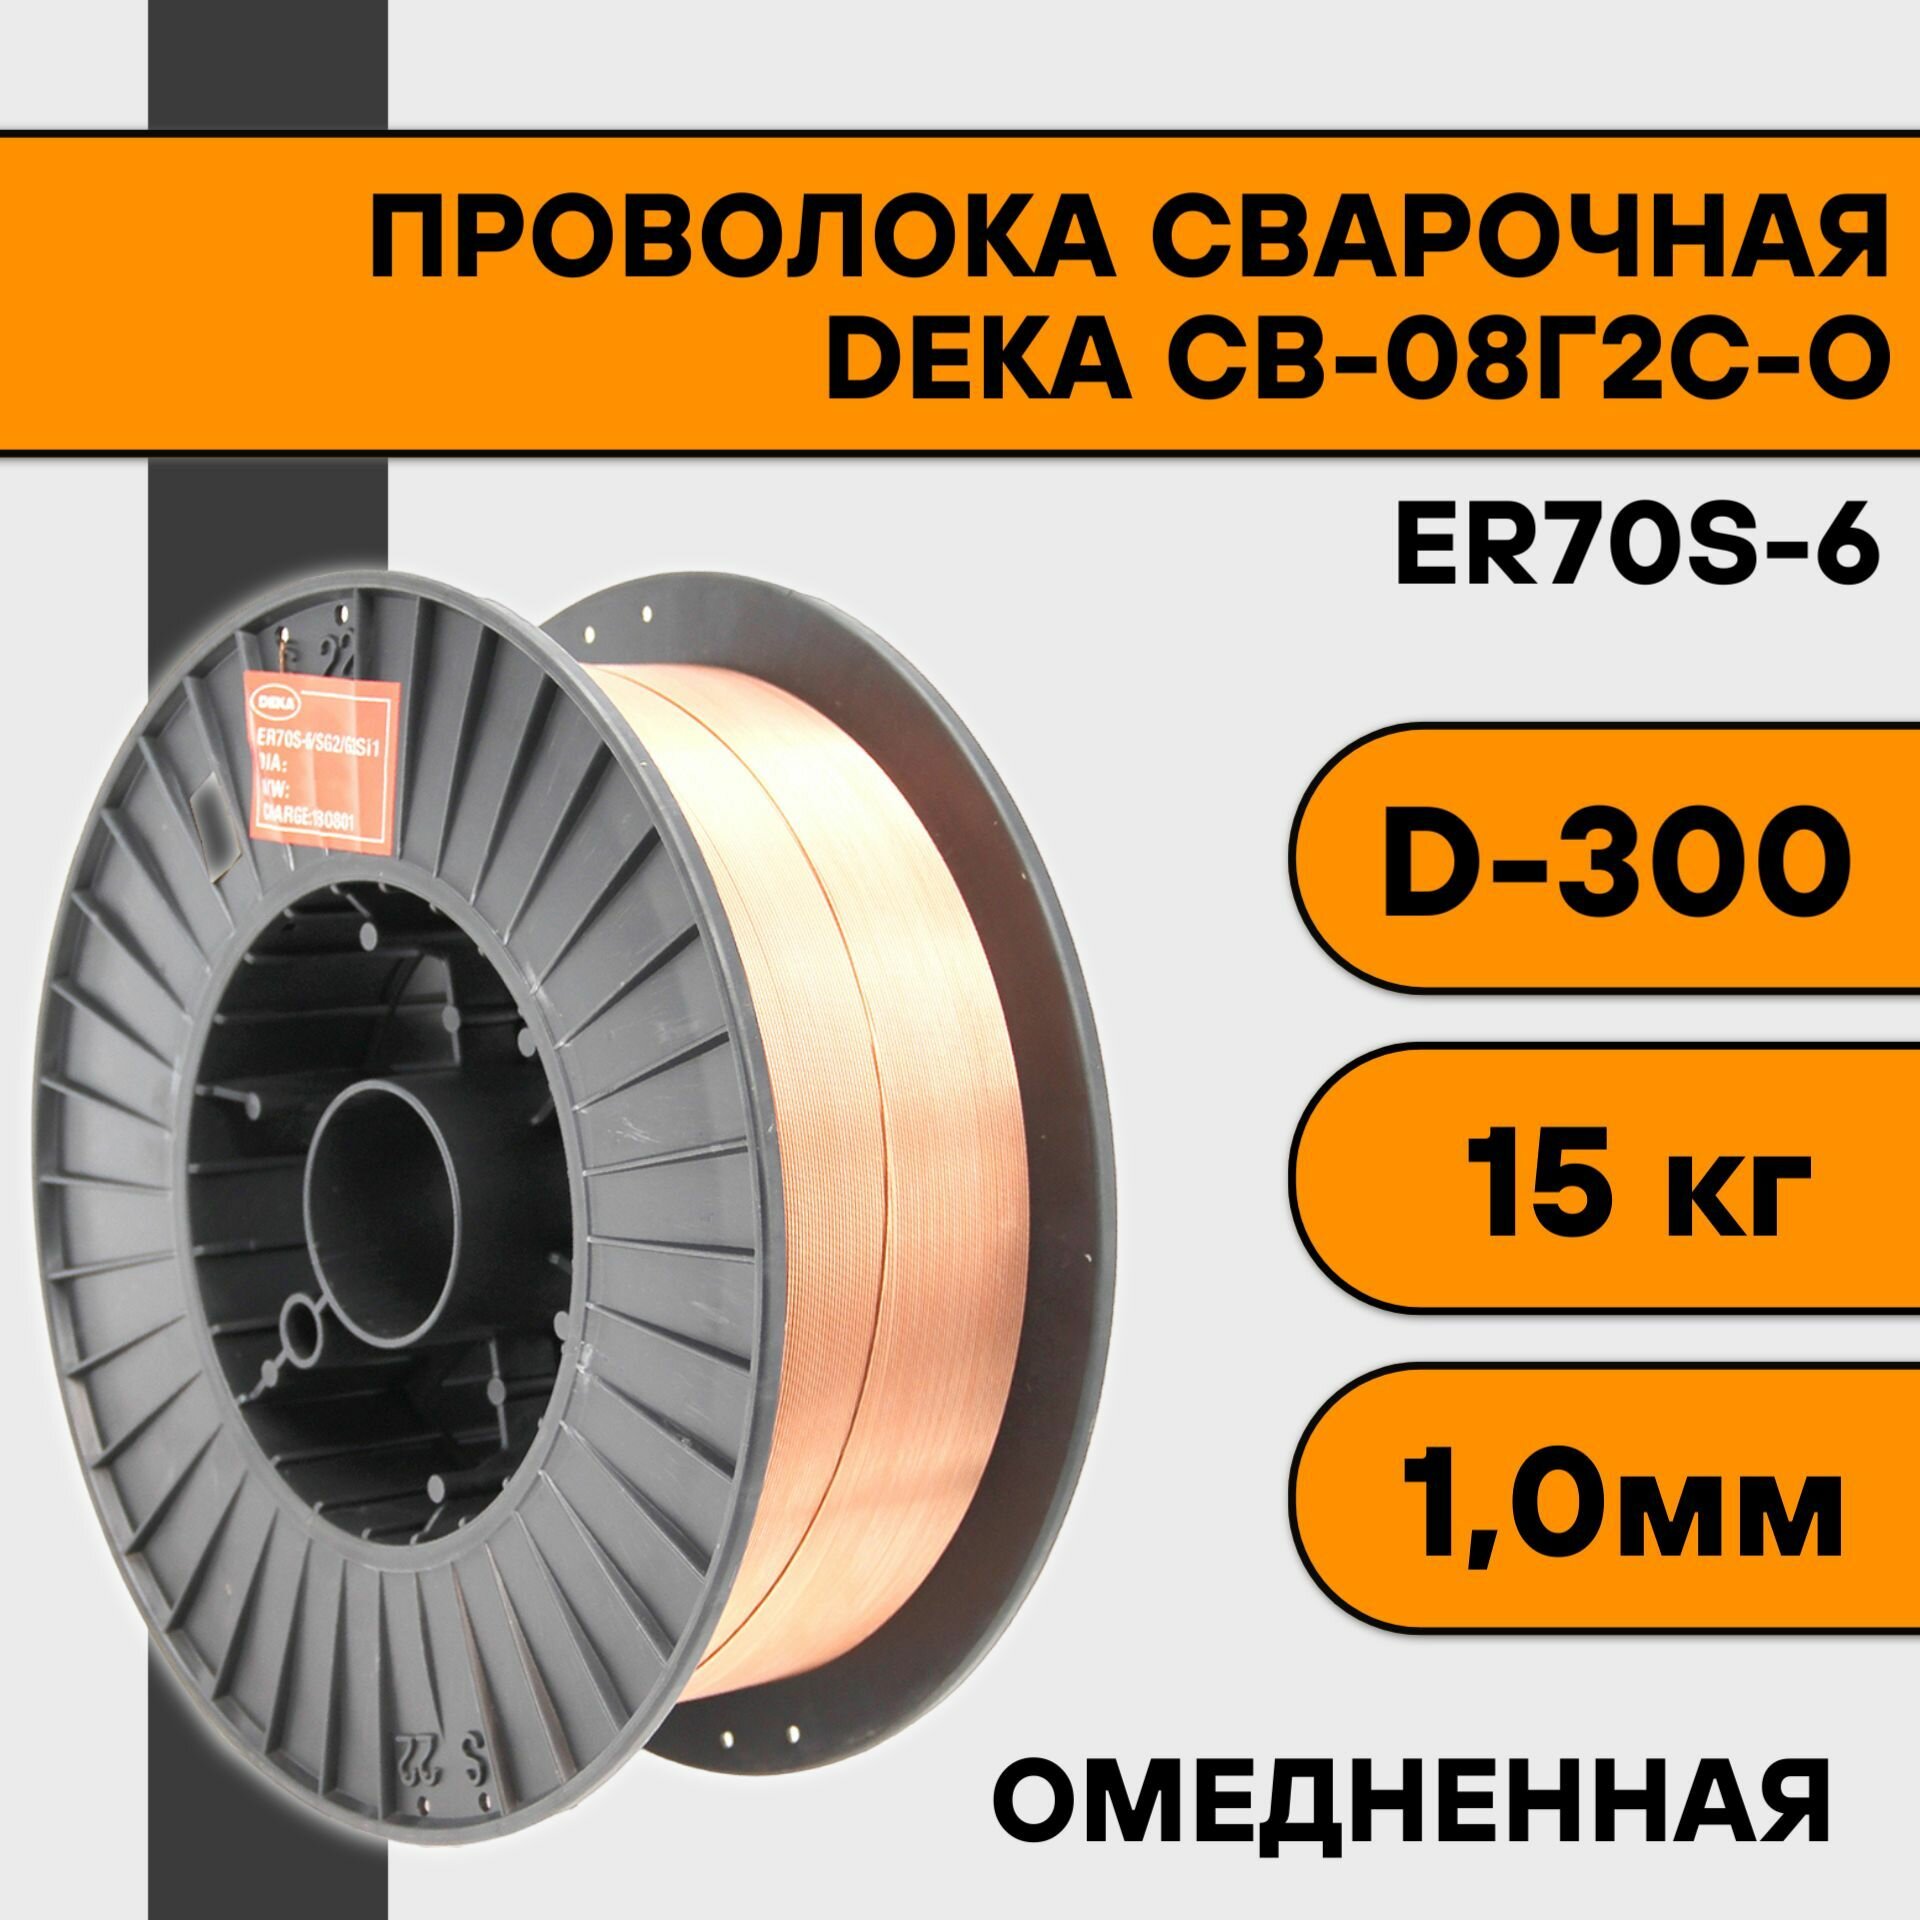 Сварочная проволока омедненная ER70S-6 ф 1,0 мм (15 кг) D300 Deka